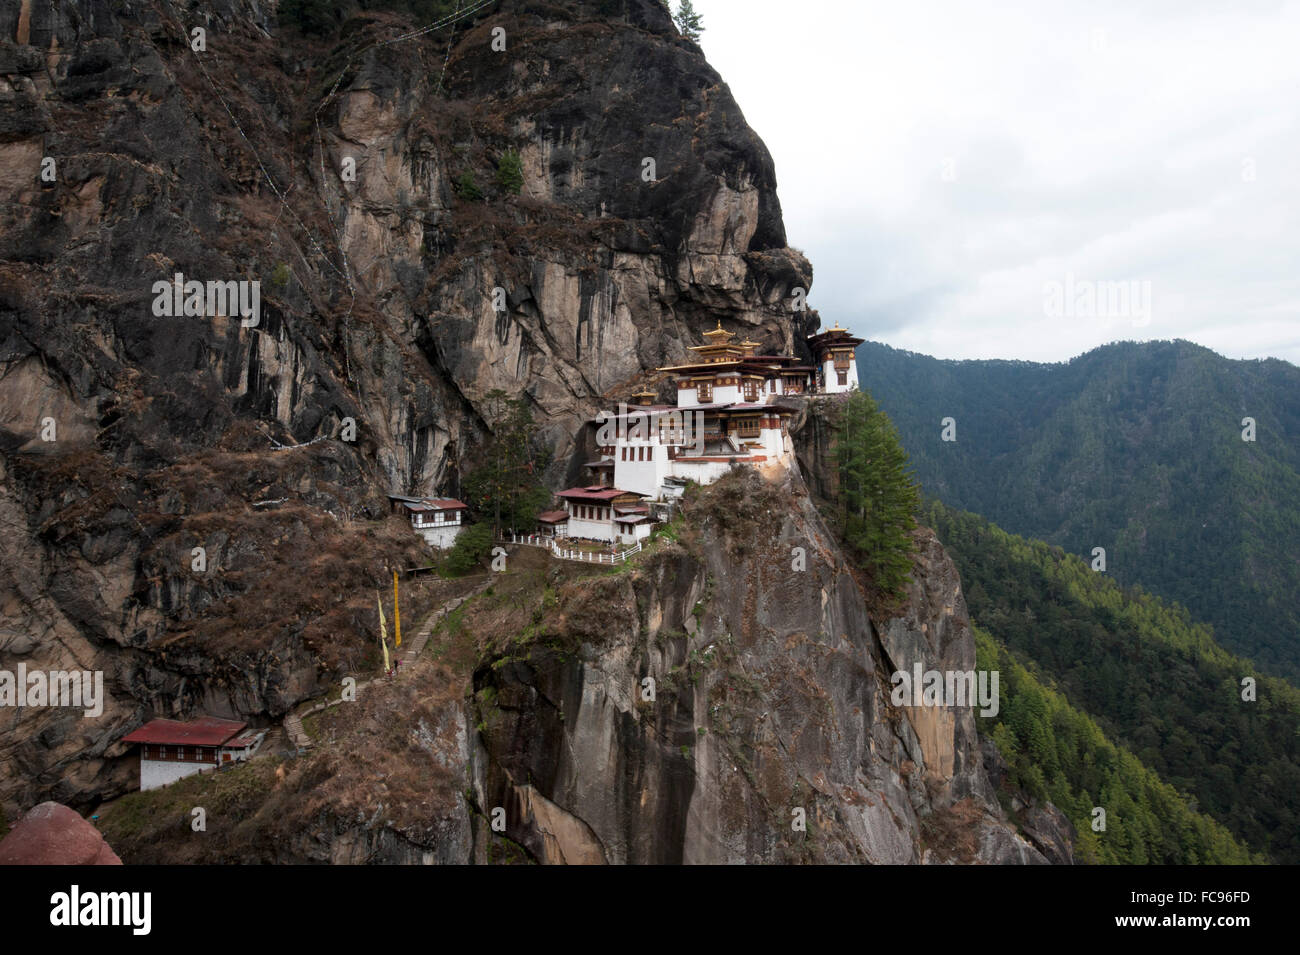 Monastère de Taktsang Palphug (Tiger's Nest monastère), un important site bouddhiste sacré accroché à rock à 3120 mètres, le Bhoutan Banque D'Images